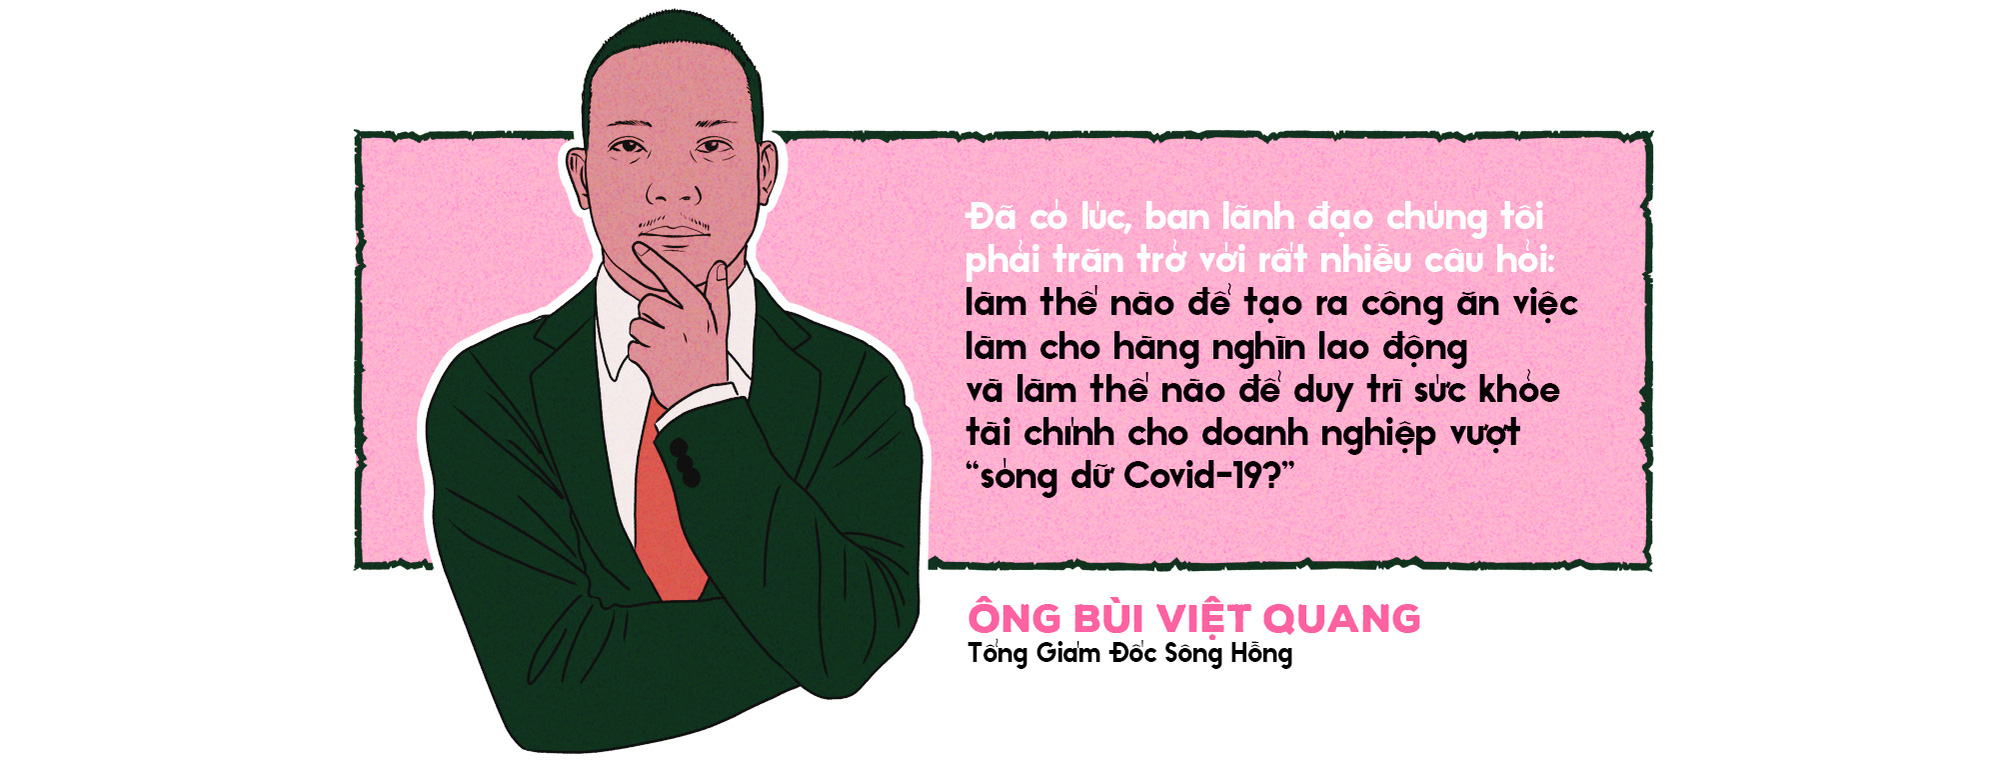 Tổng giám đốc Sông Hồng hé lộ chuyện vượt thoát cú sốc kép, đứng vững top 5 dệt may Việt Nam - Ảnh 2.